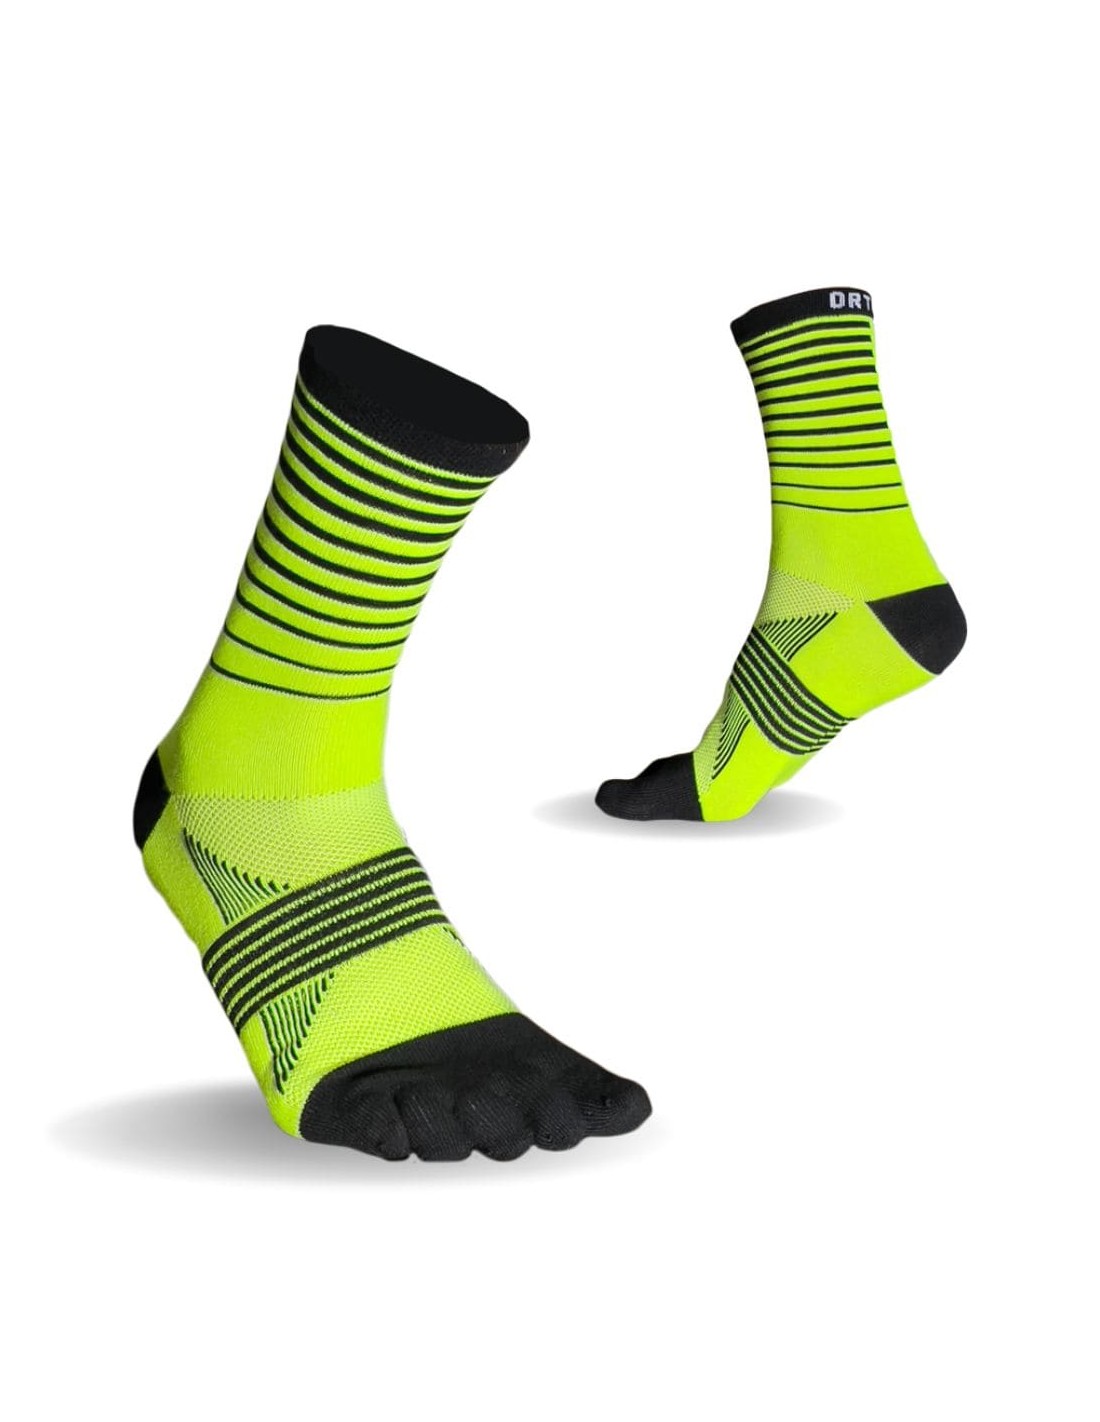 Ortles Stripes - Hohe Trailrunning-Socken Finger 5